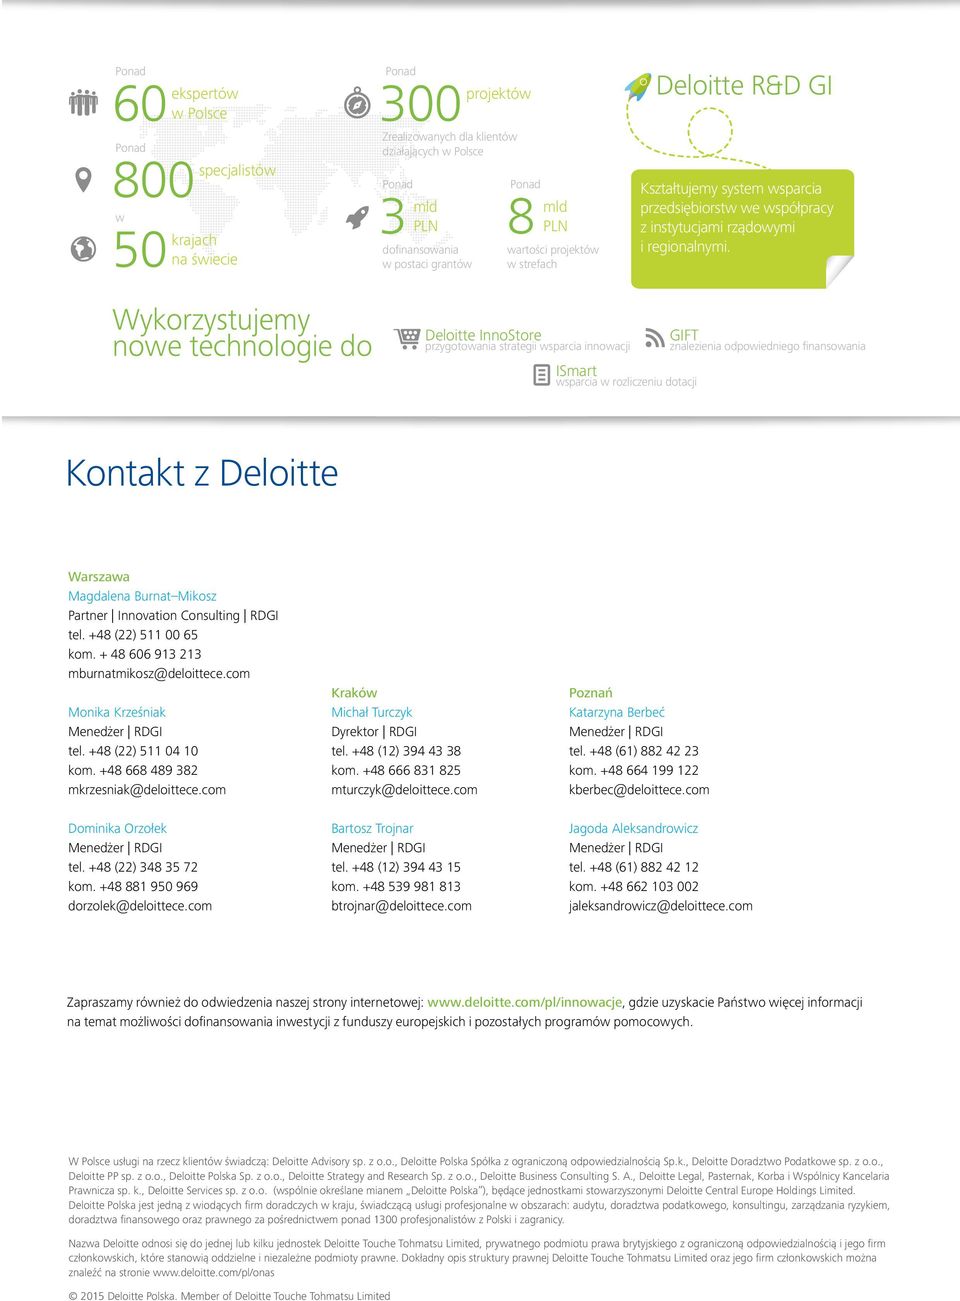 Wykorzystujemy nowe technologie do Deloitte InnoStore przygotowania strategii wsparcia innowacji ISmart GIFT wsparcia w rozliczeniu dotacji znalezienia odpowiedniego finansowania Kontakt z Deloitte